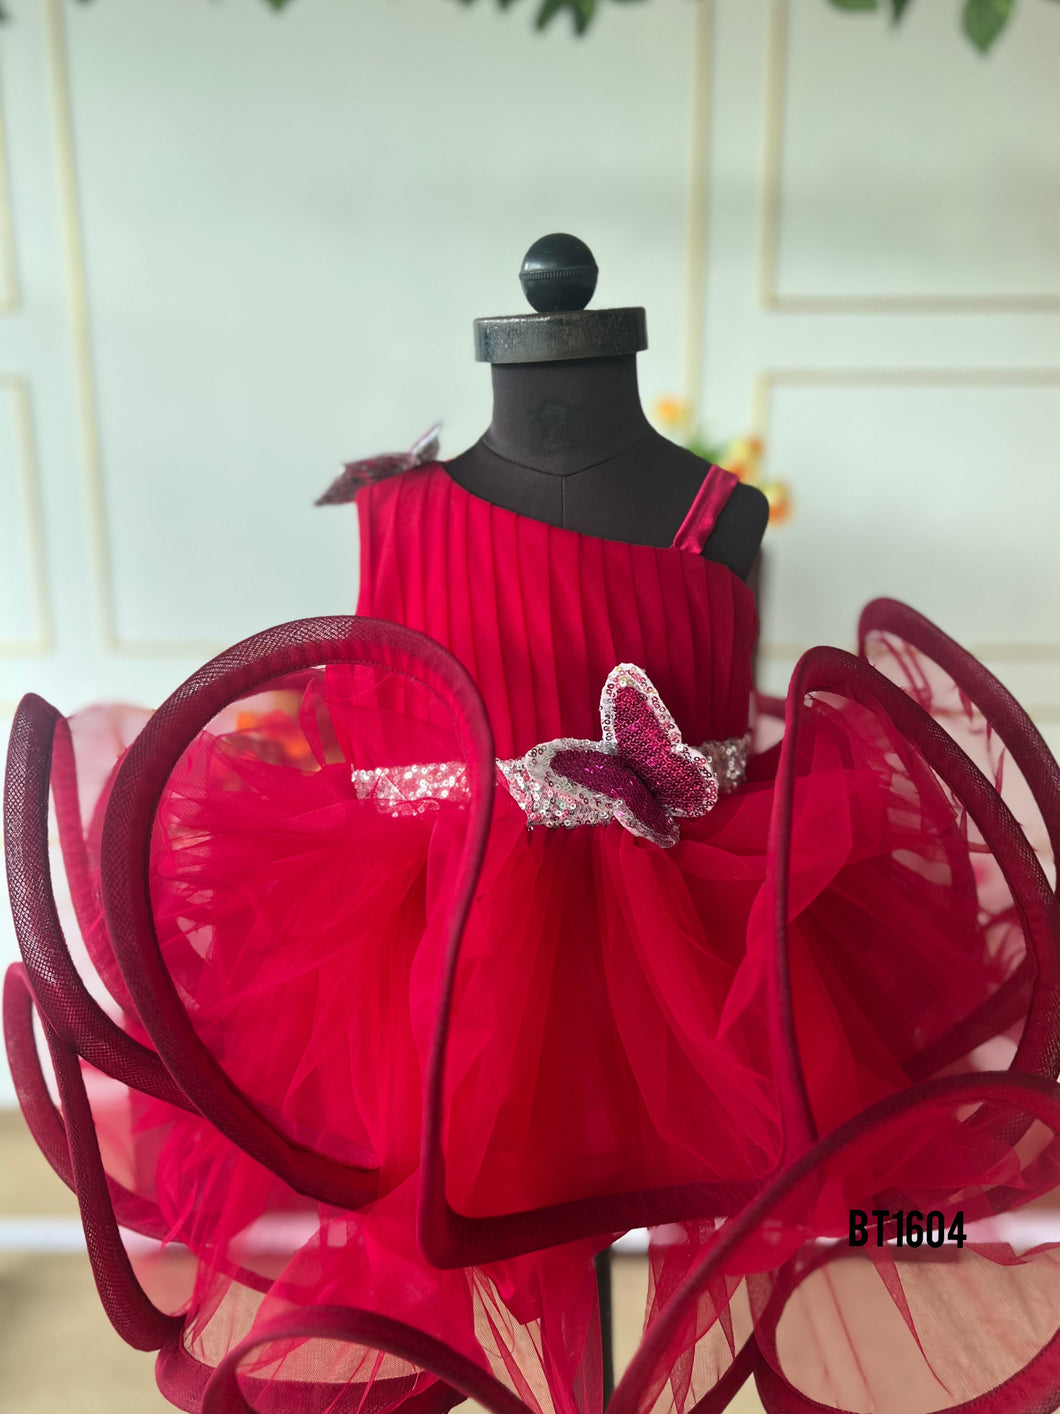 BT1604 Crimson Butterfly Dress – Flutters of Fancy for Festive Fun!